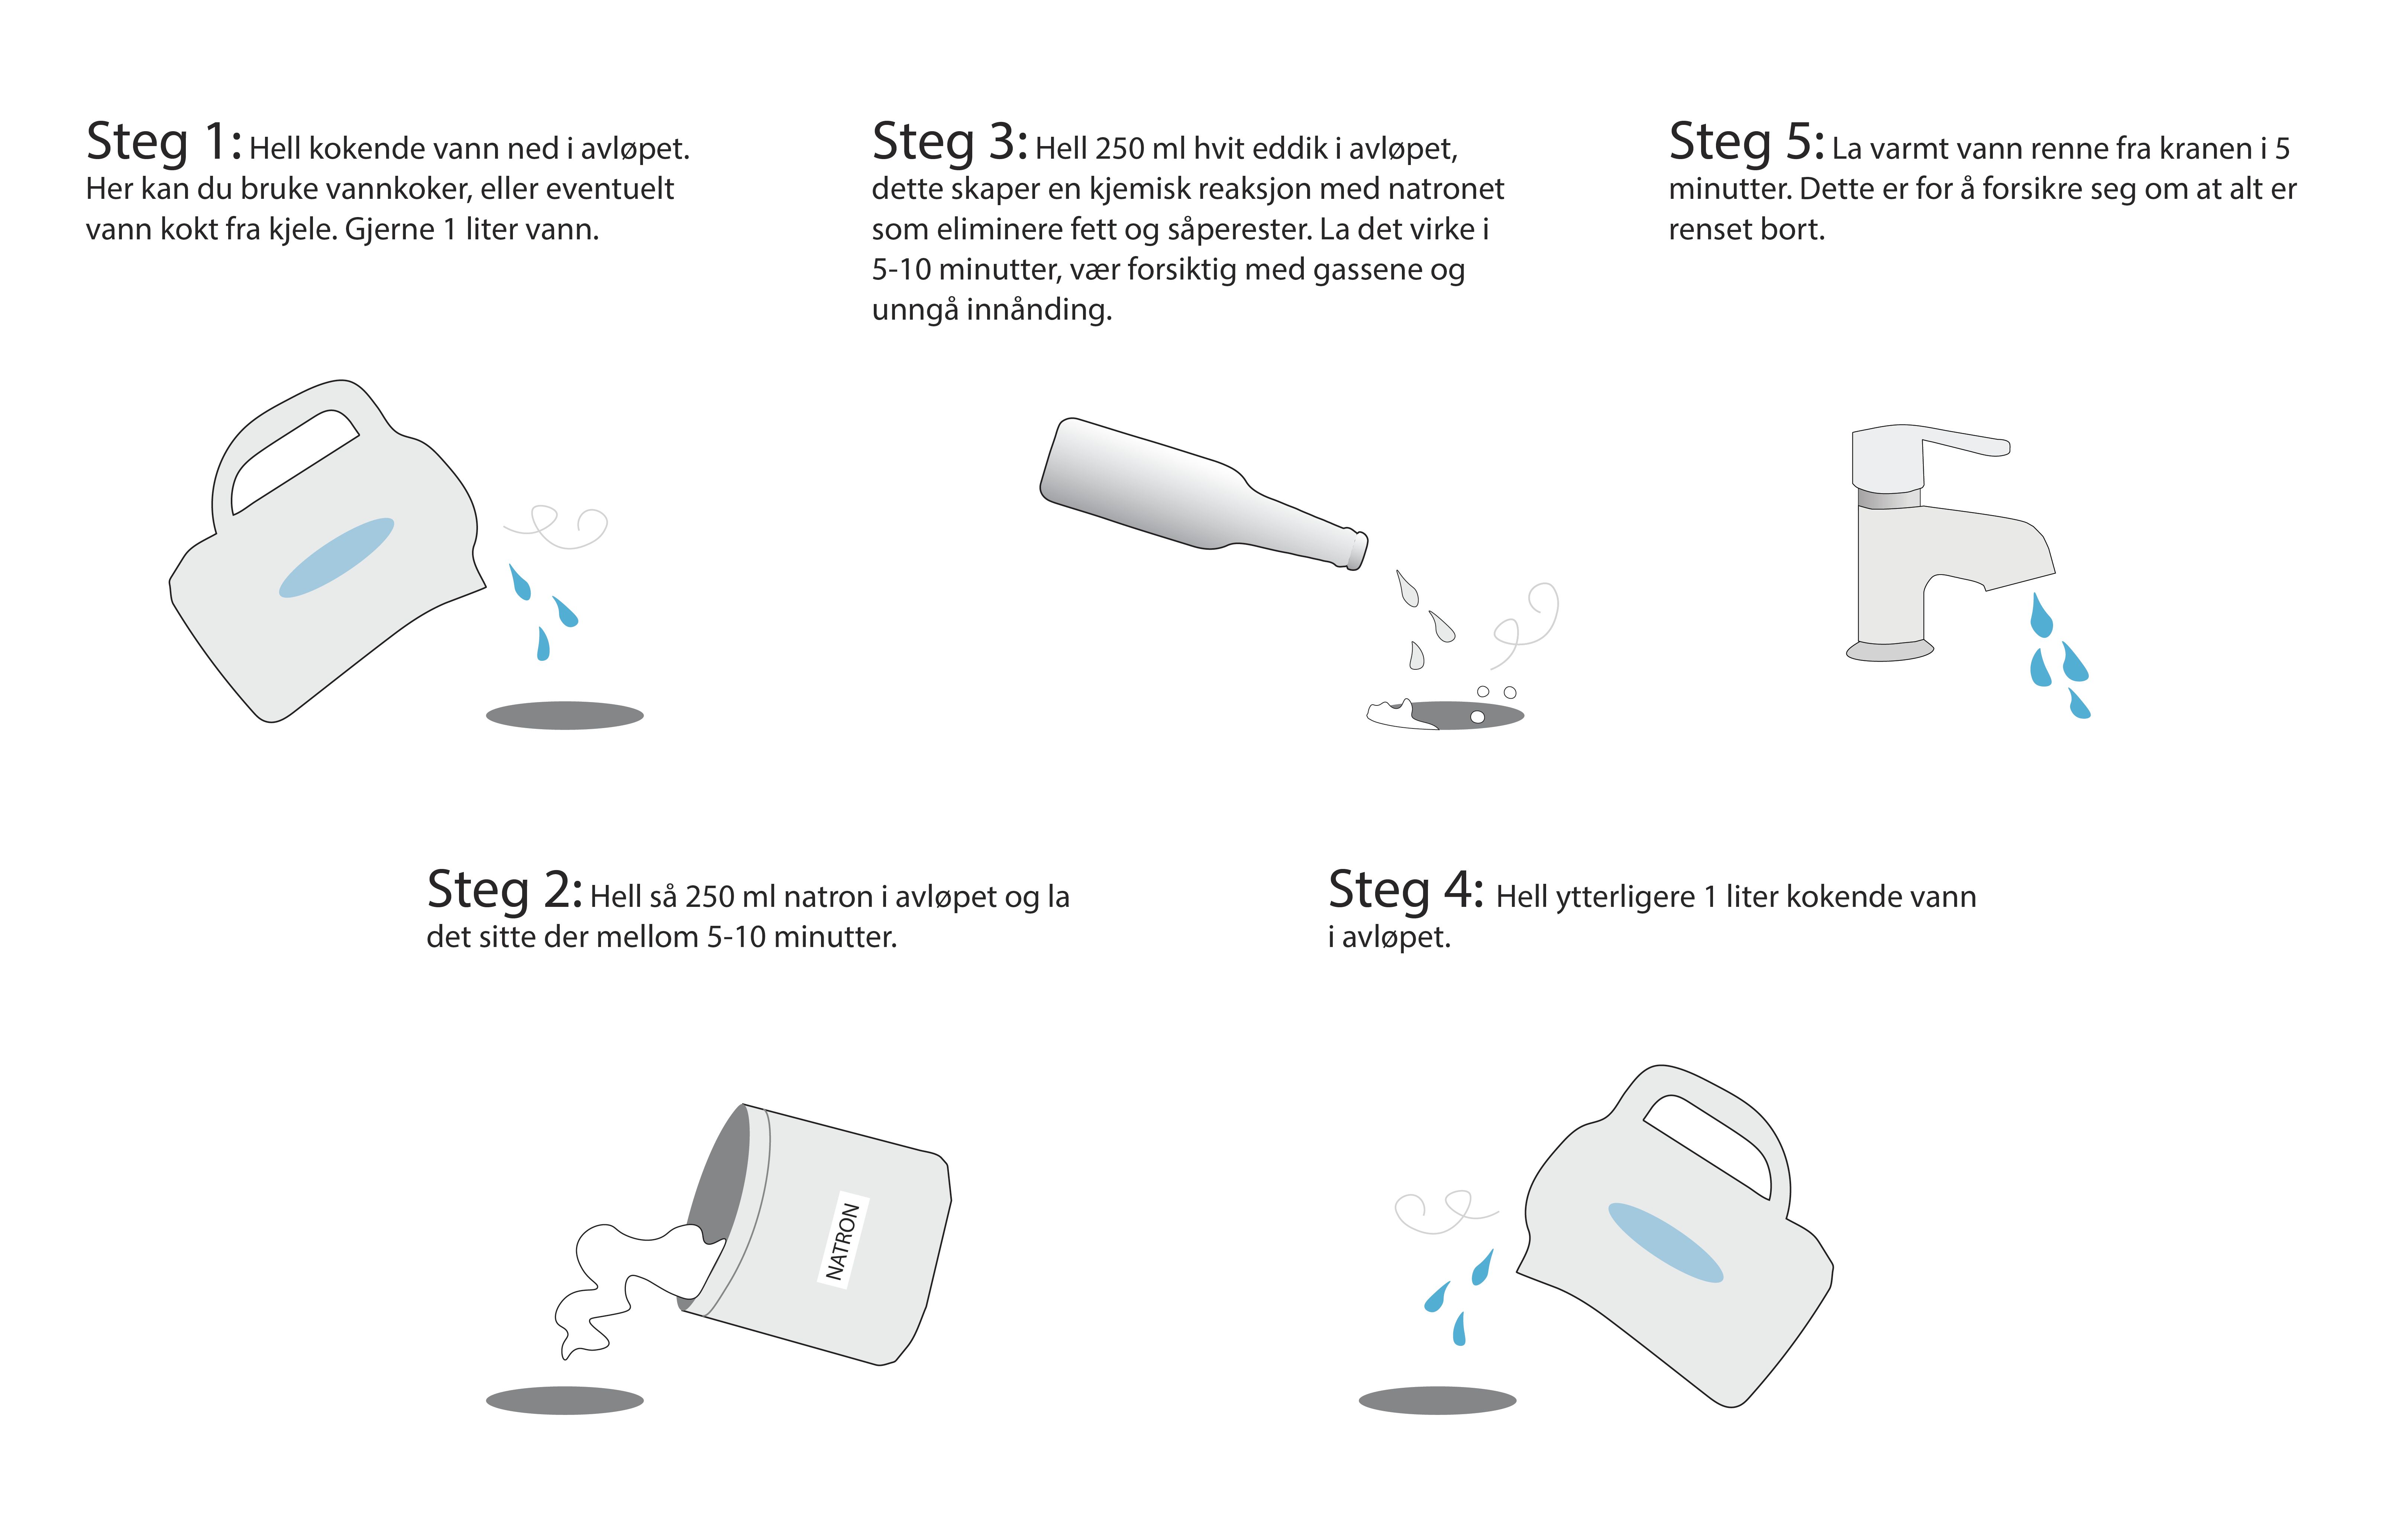 en illustrasjon av hvordan man kan rense tette sluk med kokenda vann, hvit eddik og natron